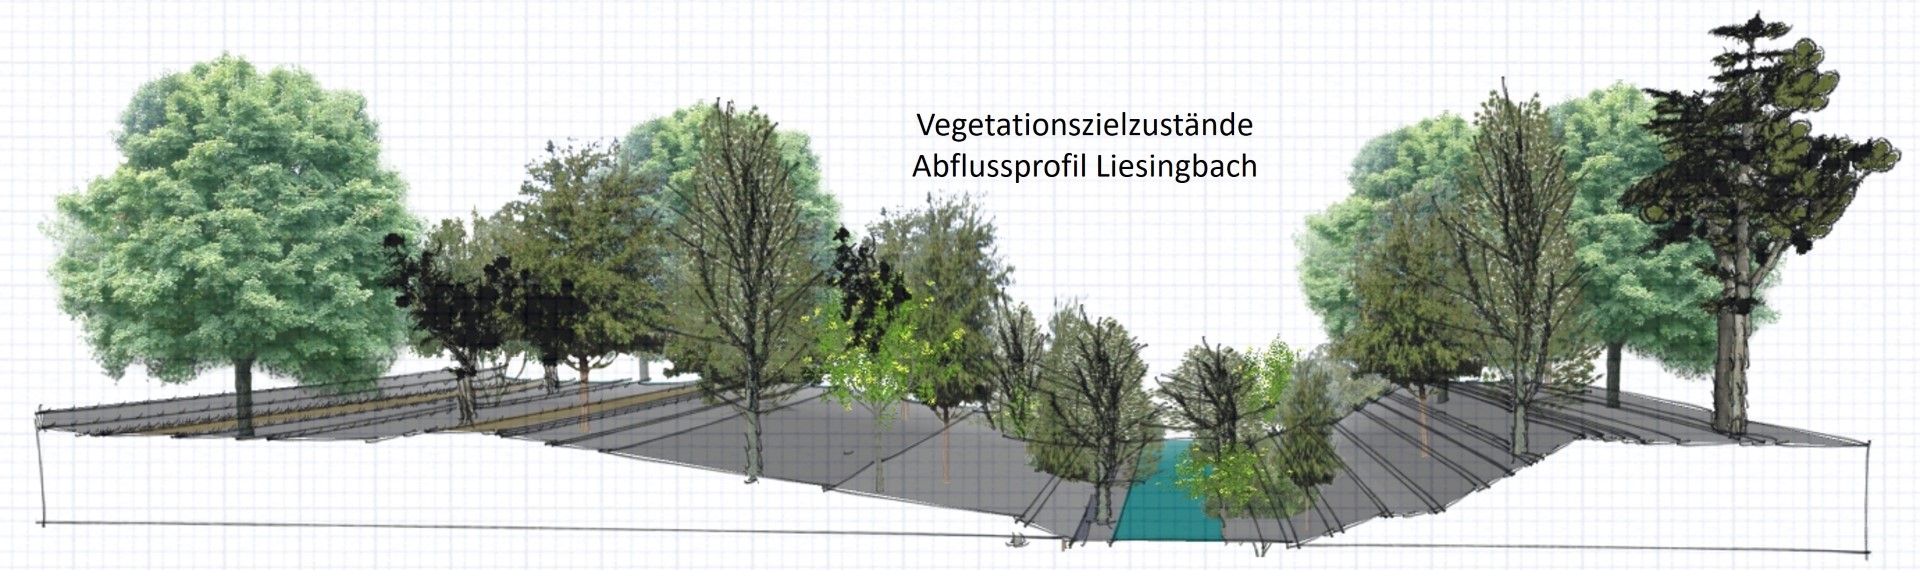 Vegetationszielzustände – Liesingbach